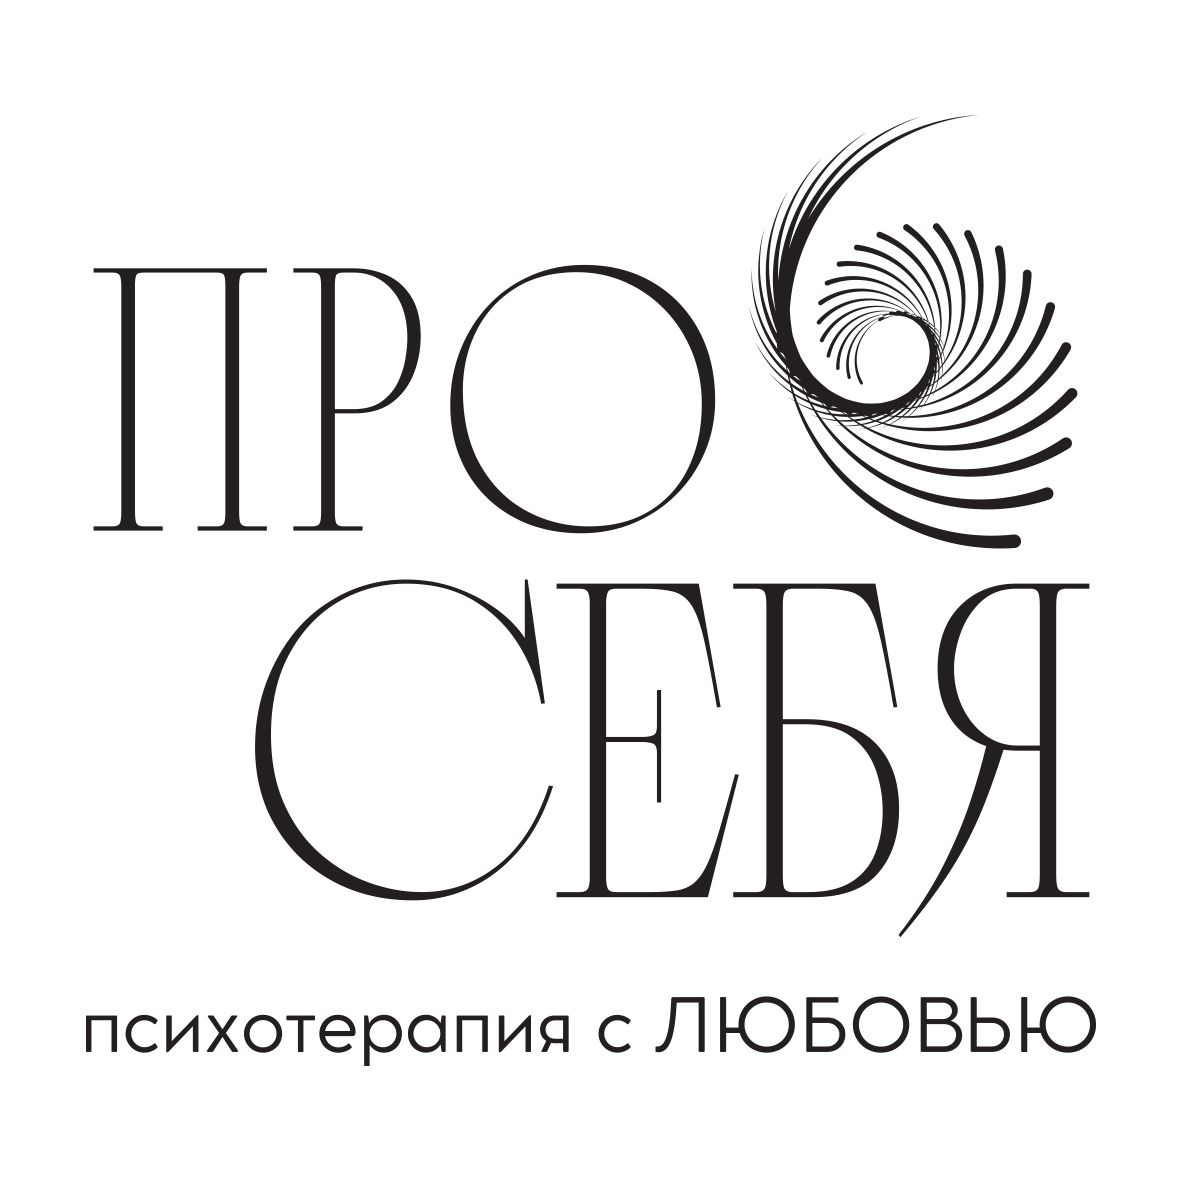 Лого ПроСебя.jpg